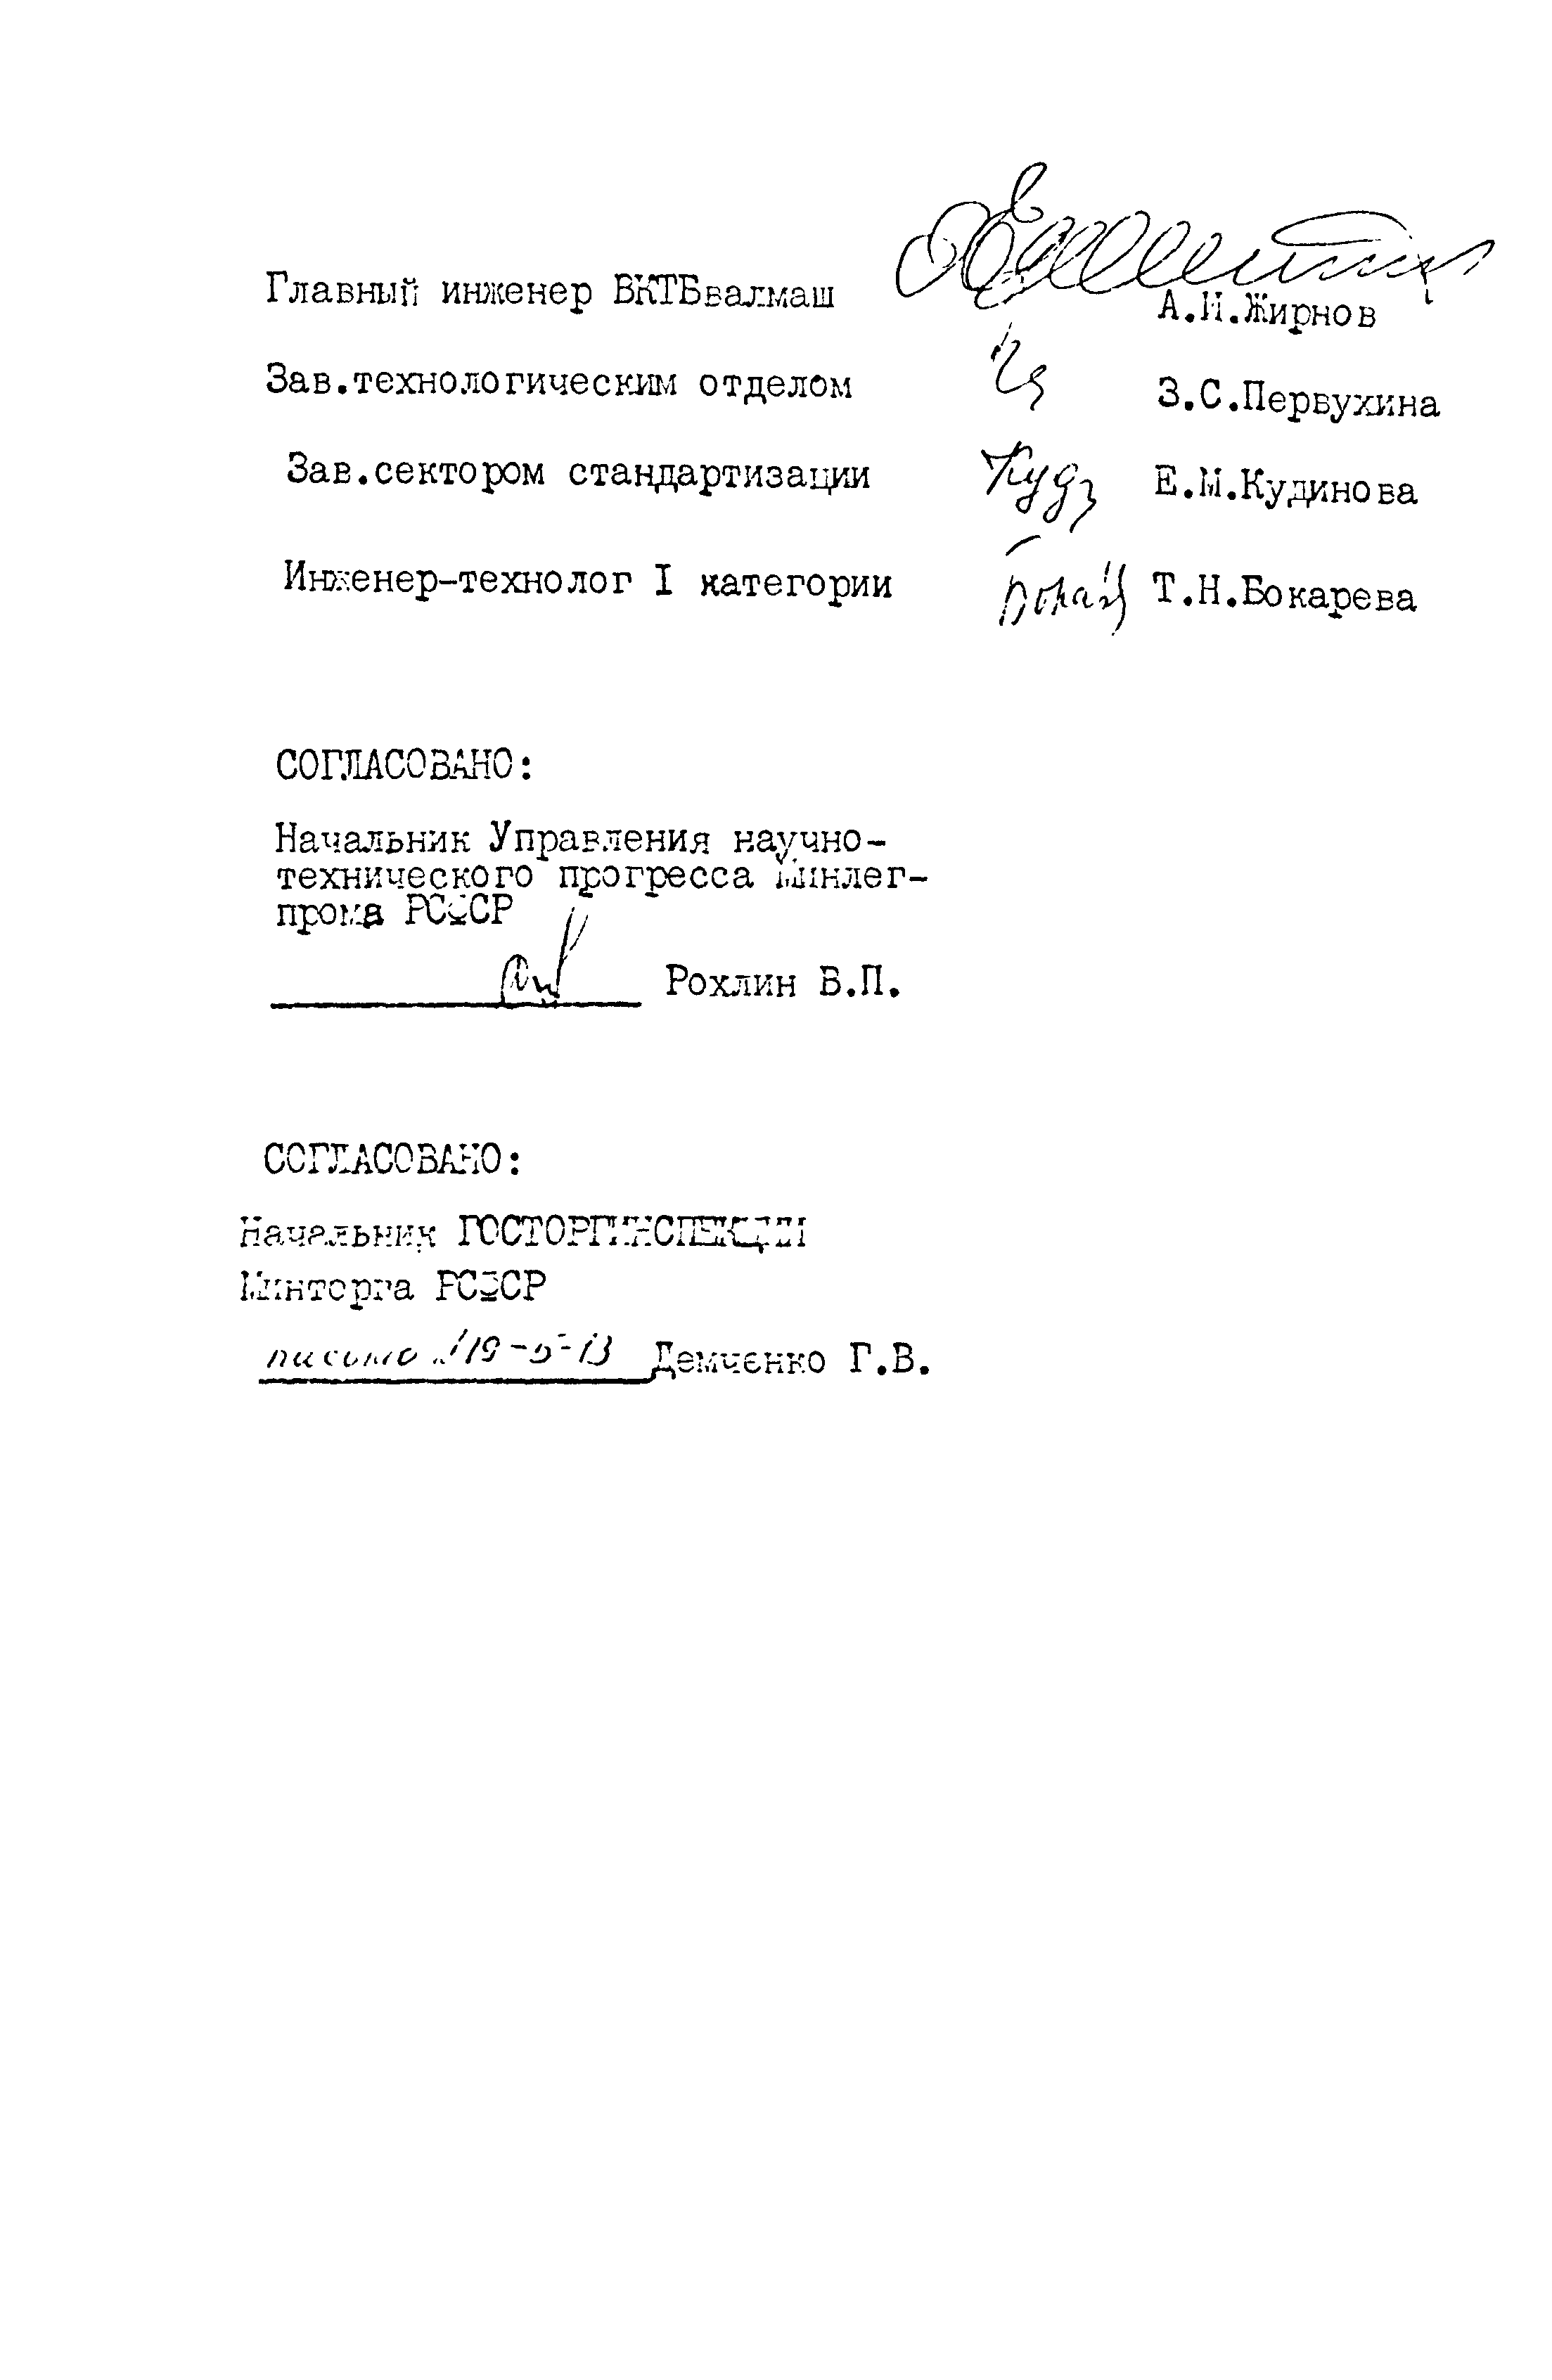 РСТ РСФСР 754-89